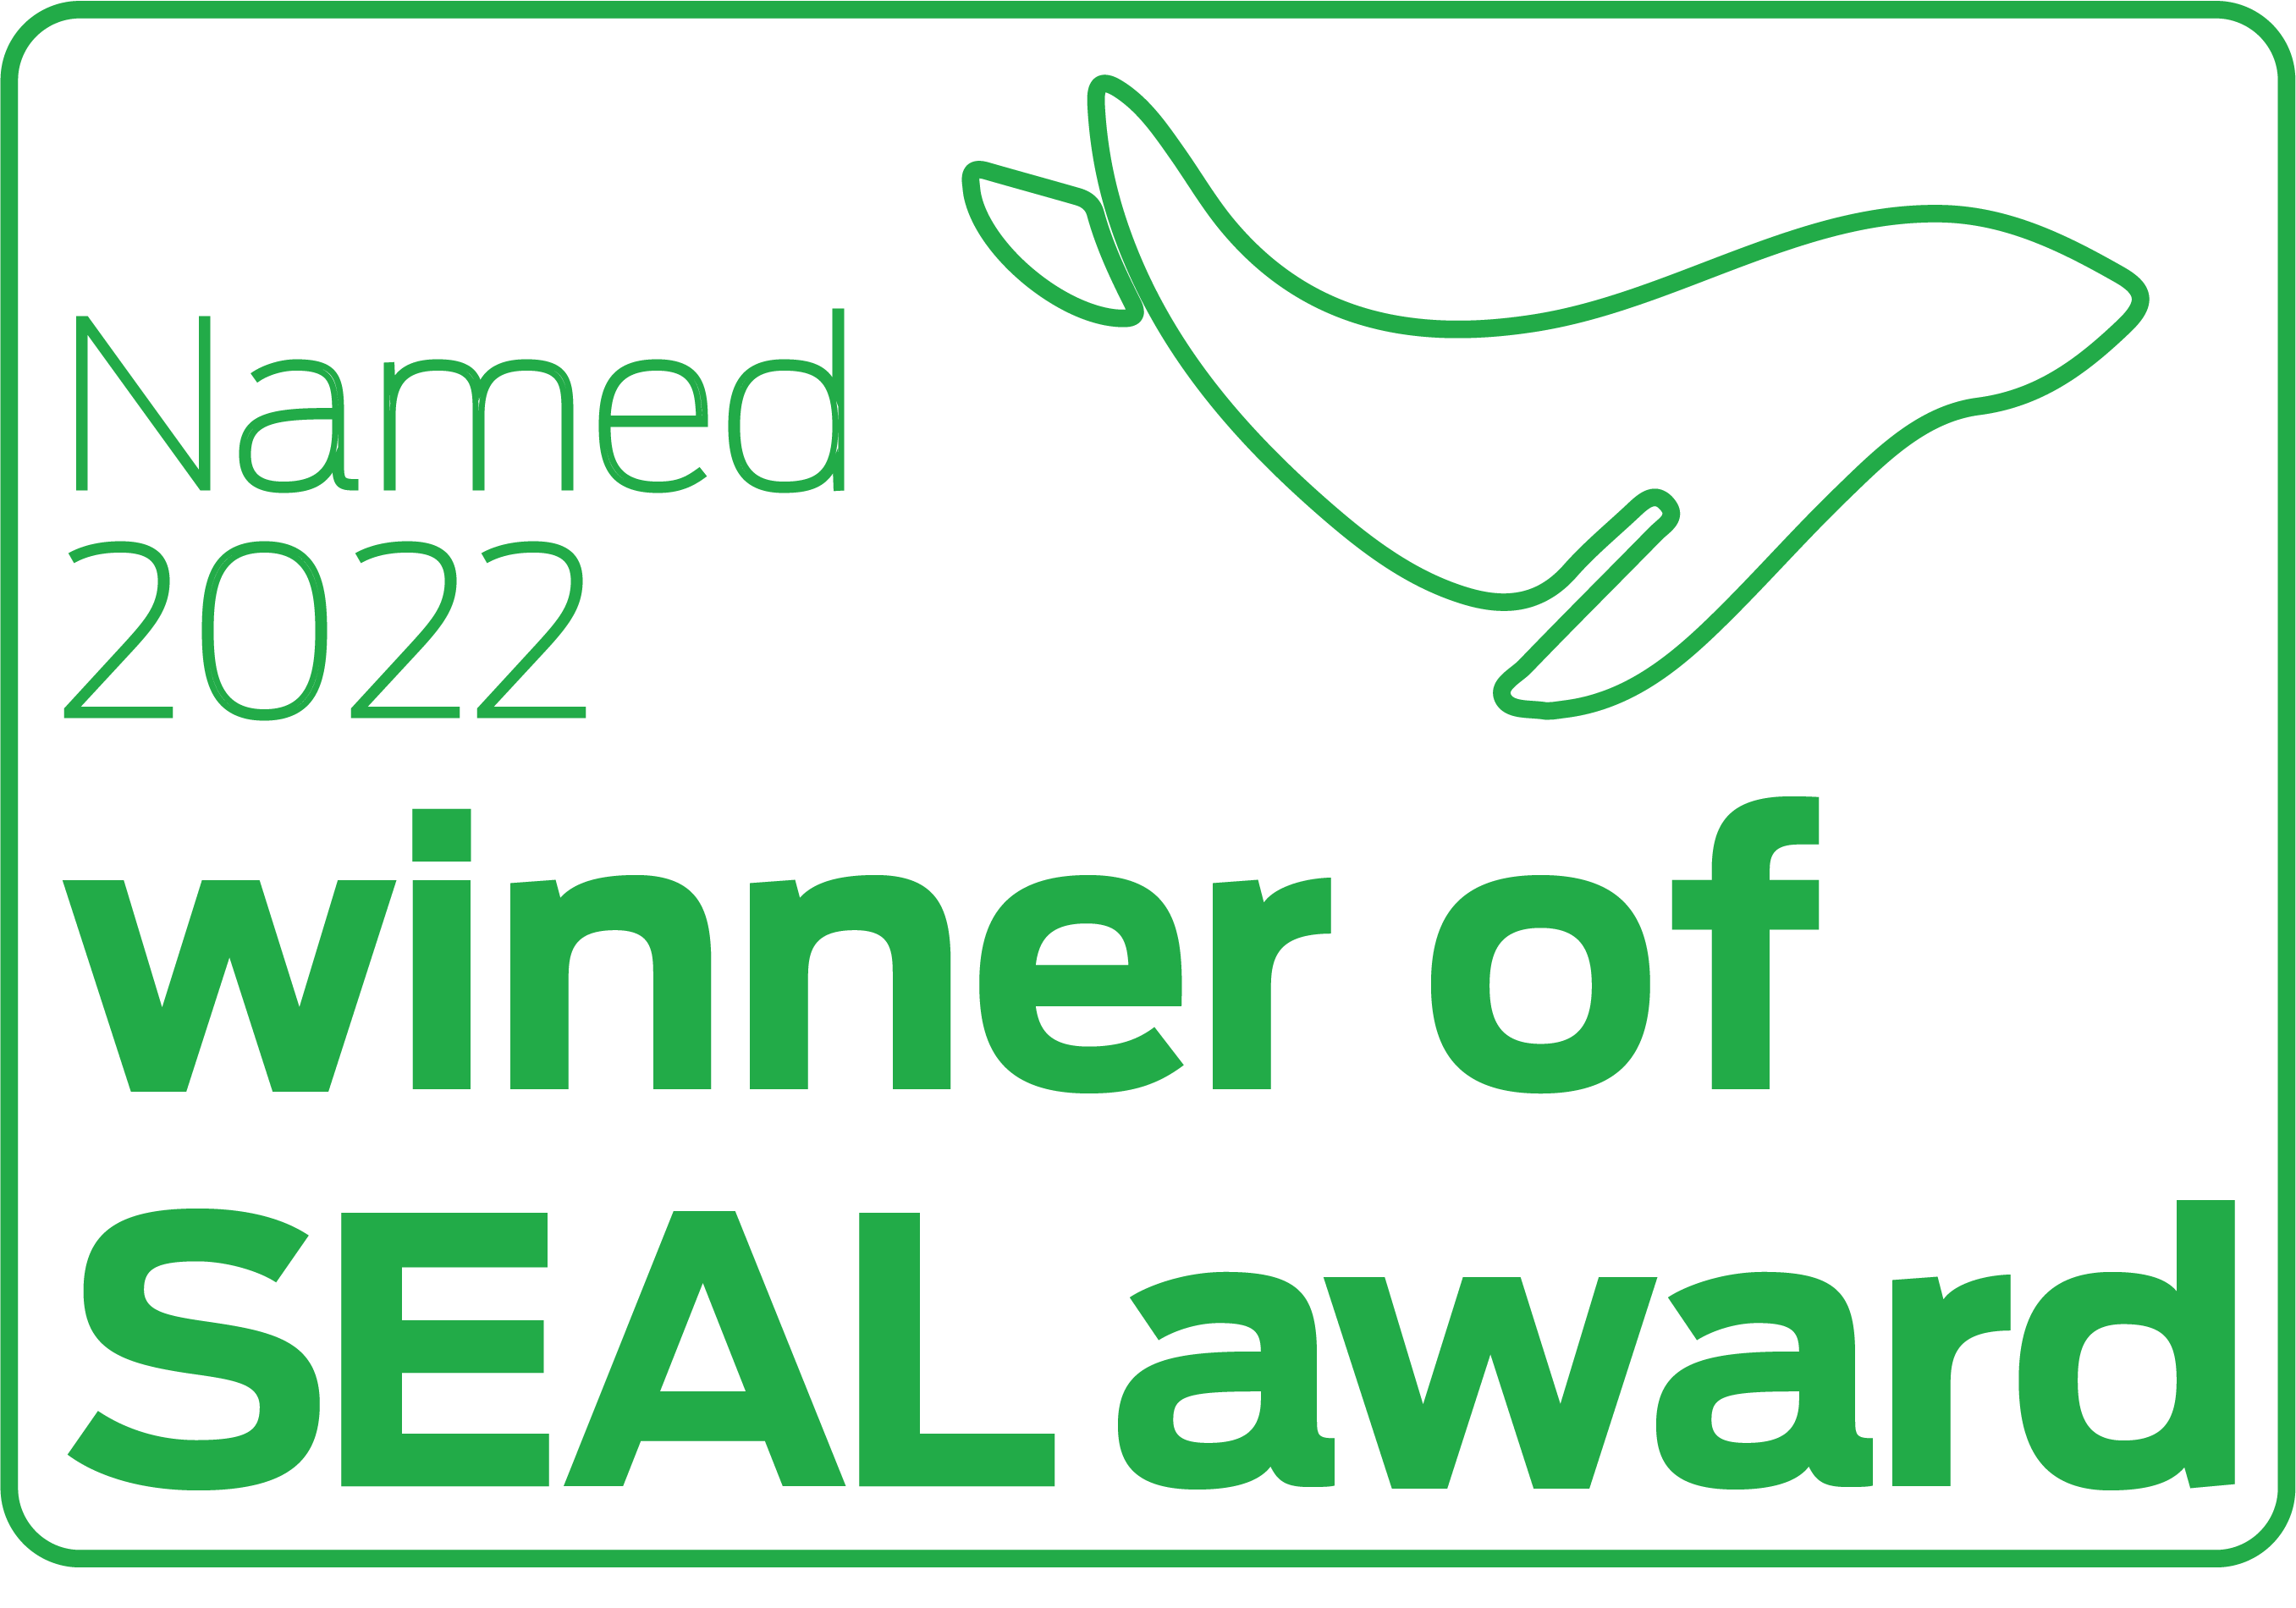 Named 2022 winner of SEAL award